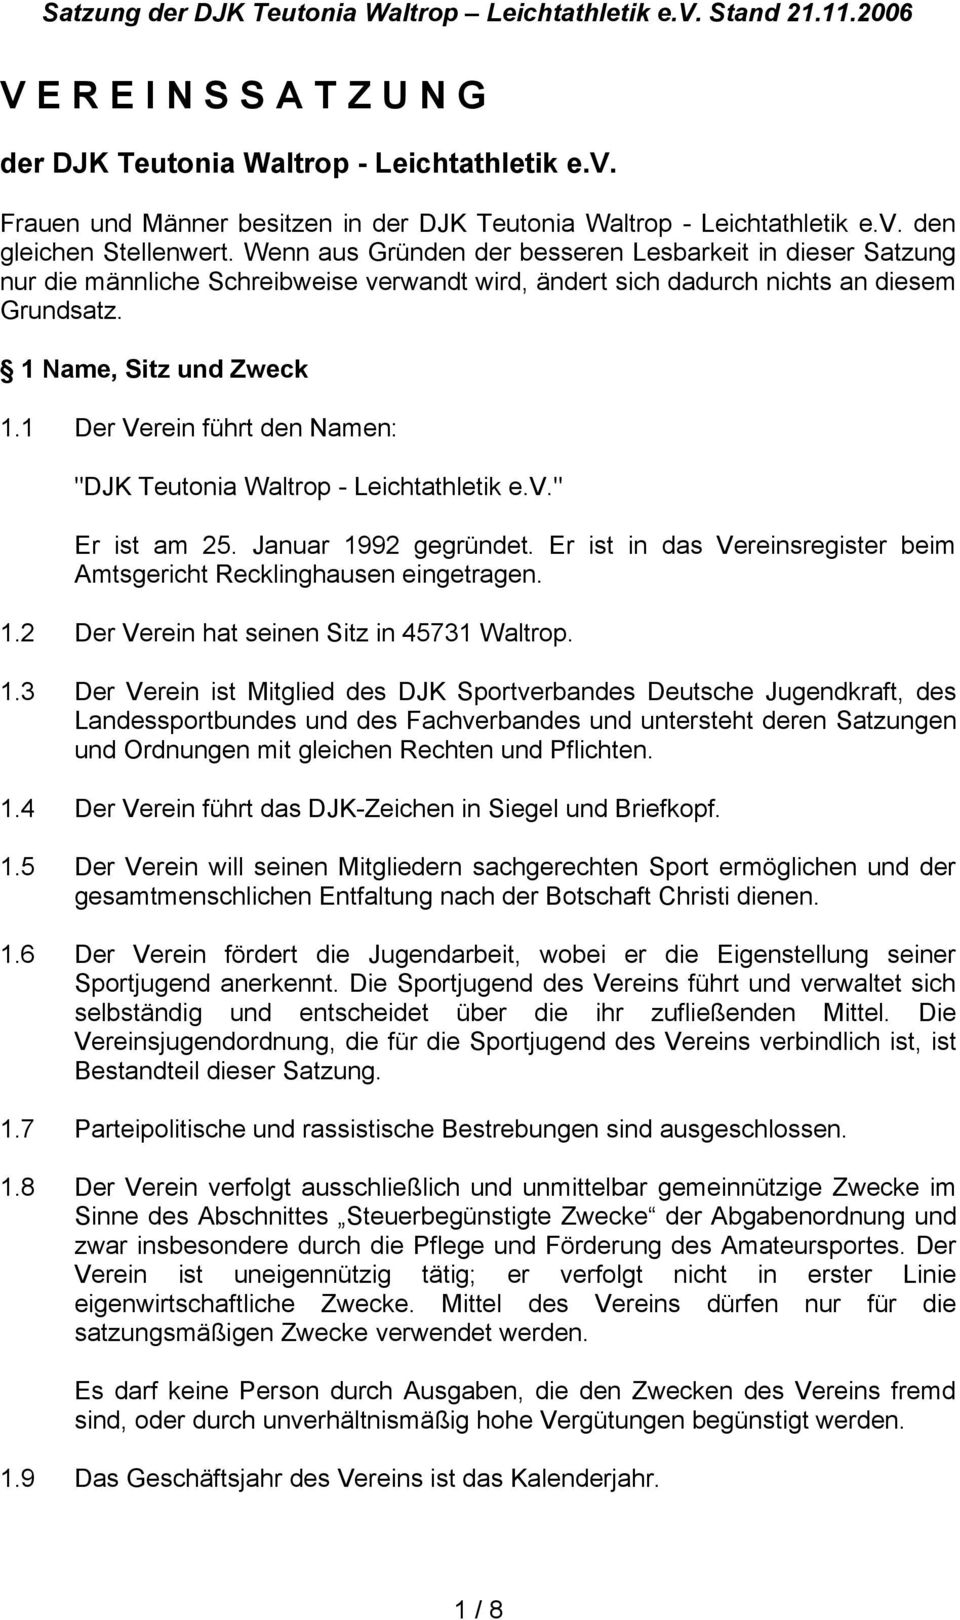 1 Der Verein führt den Namen: "DJK Teutonia Waltrop - Leichtathletik e.v." Er ist am 25. Januar 1992 gegründet. Er ist in das Vereinsregister beim Amtsgericht Recklinghausen eingetragen. 1.2 Der Verein hat seinen Sitz in 45731 Waltrop.